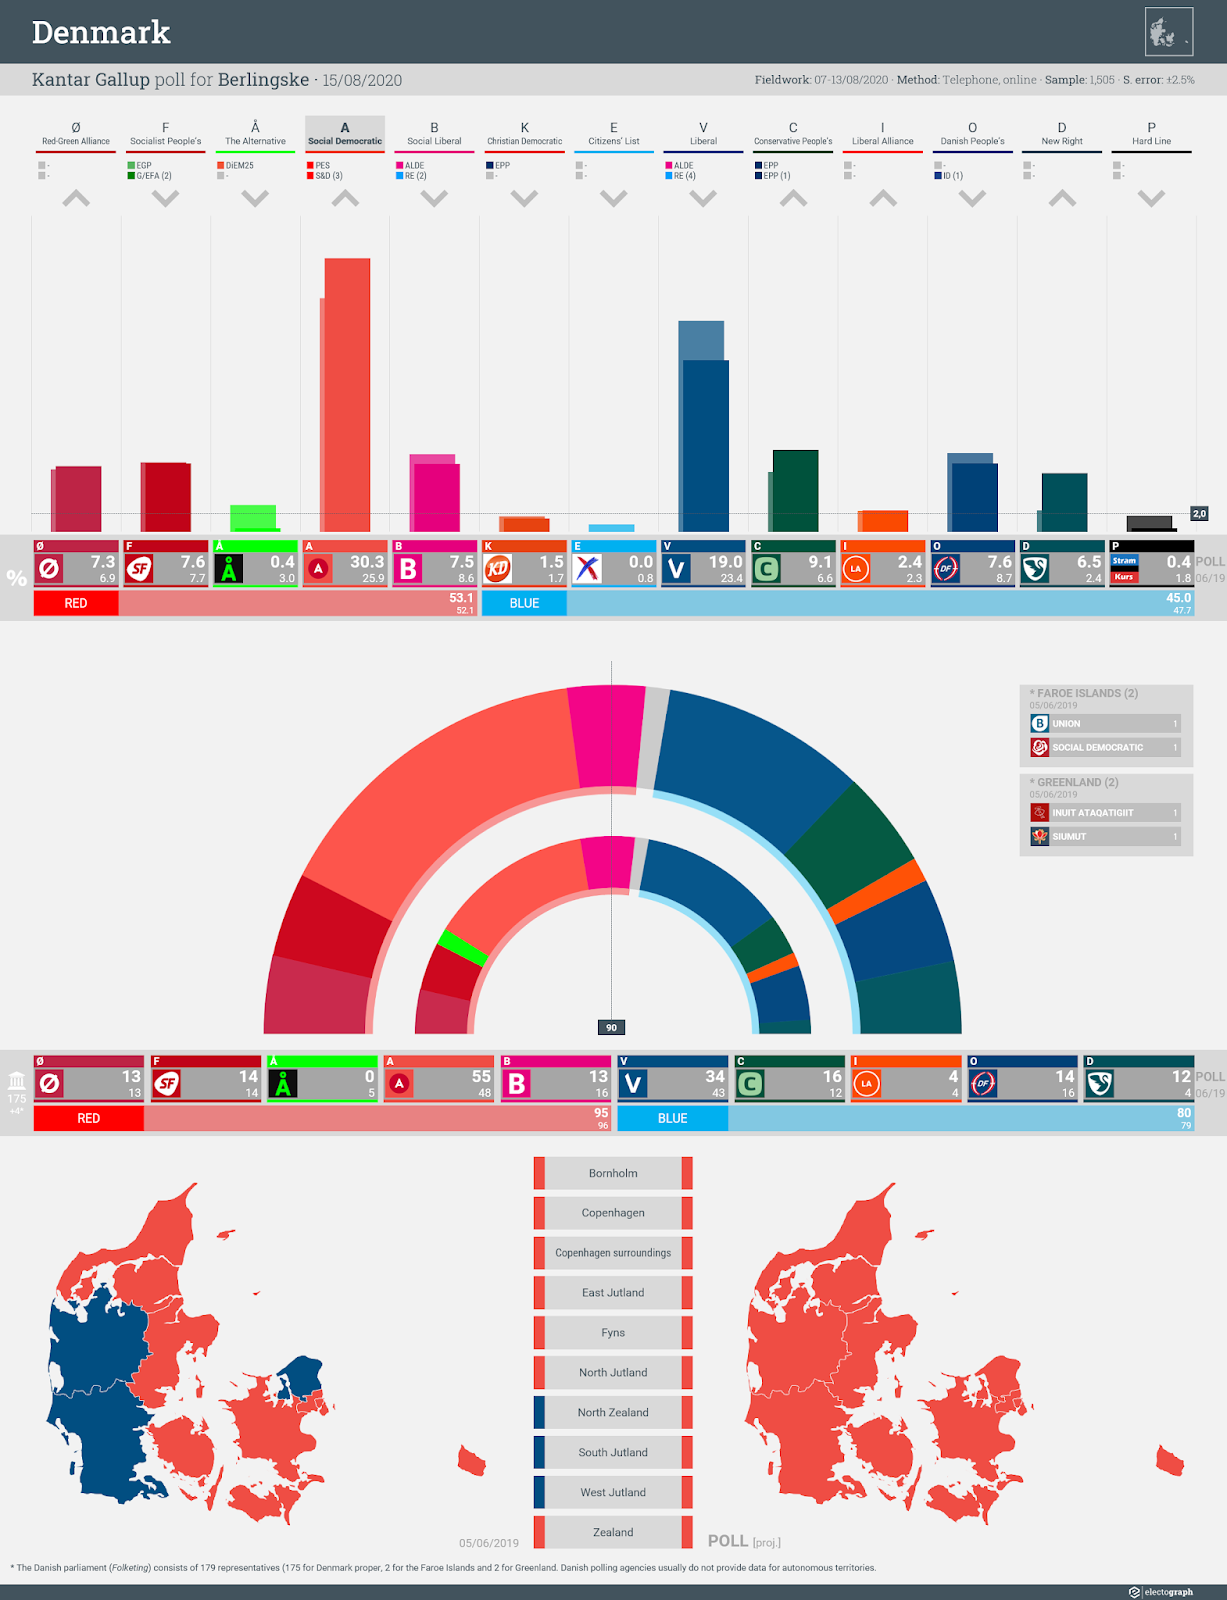 DENMARK: Kantar Gallup poll chart for Berlingske, 15 August 2020